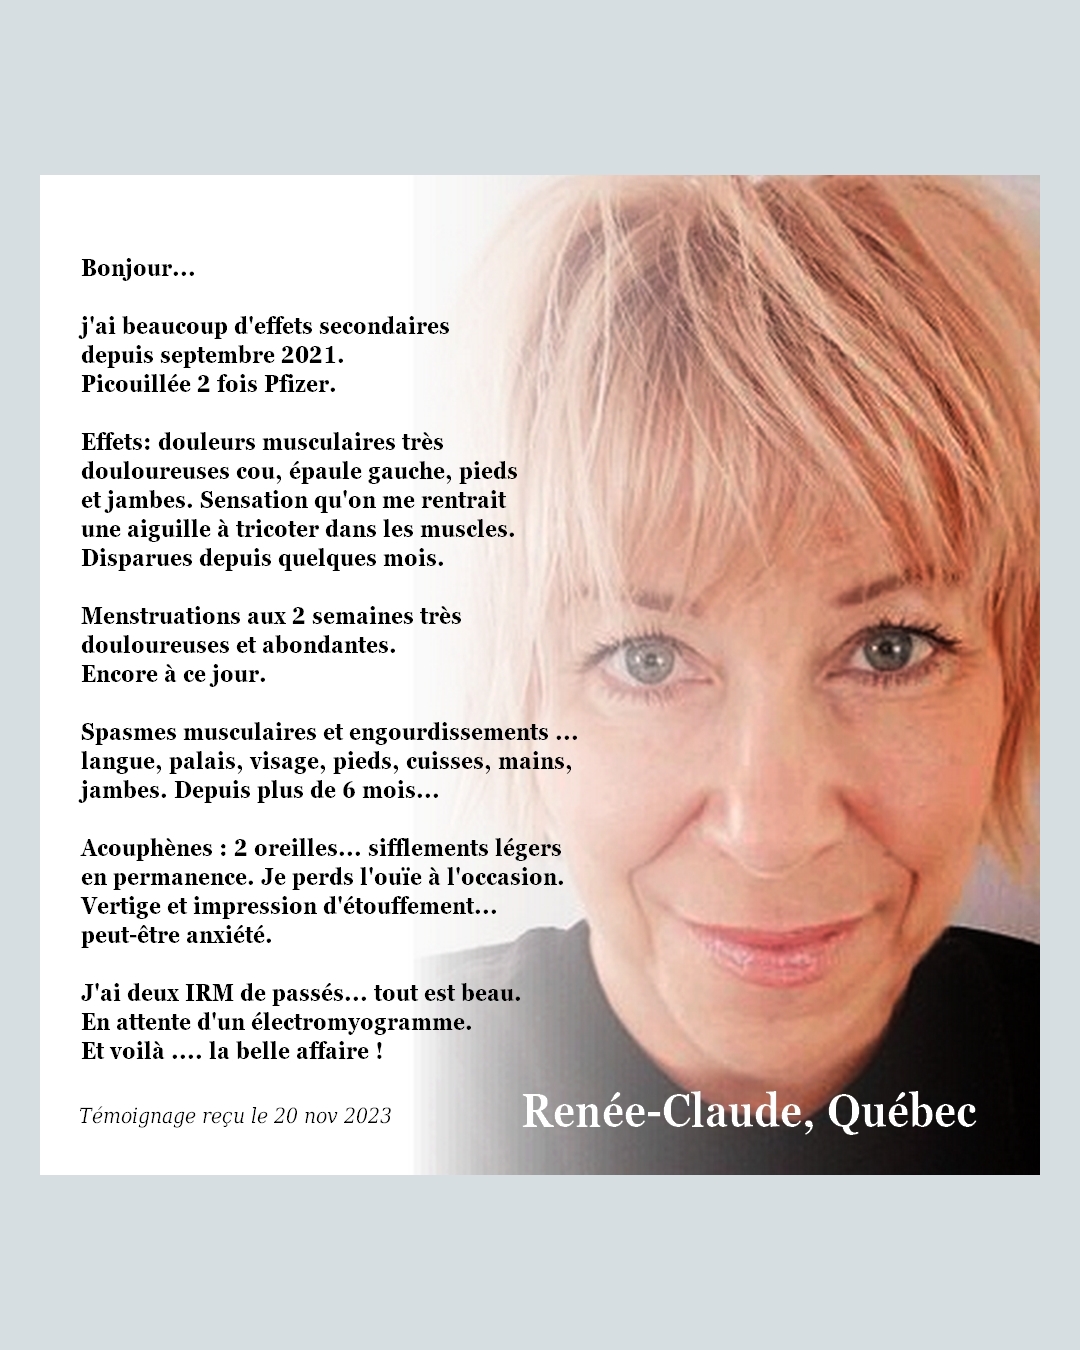 Renée-Claude